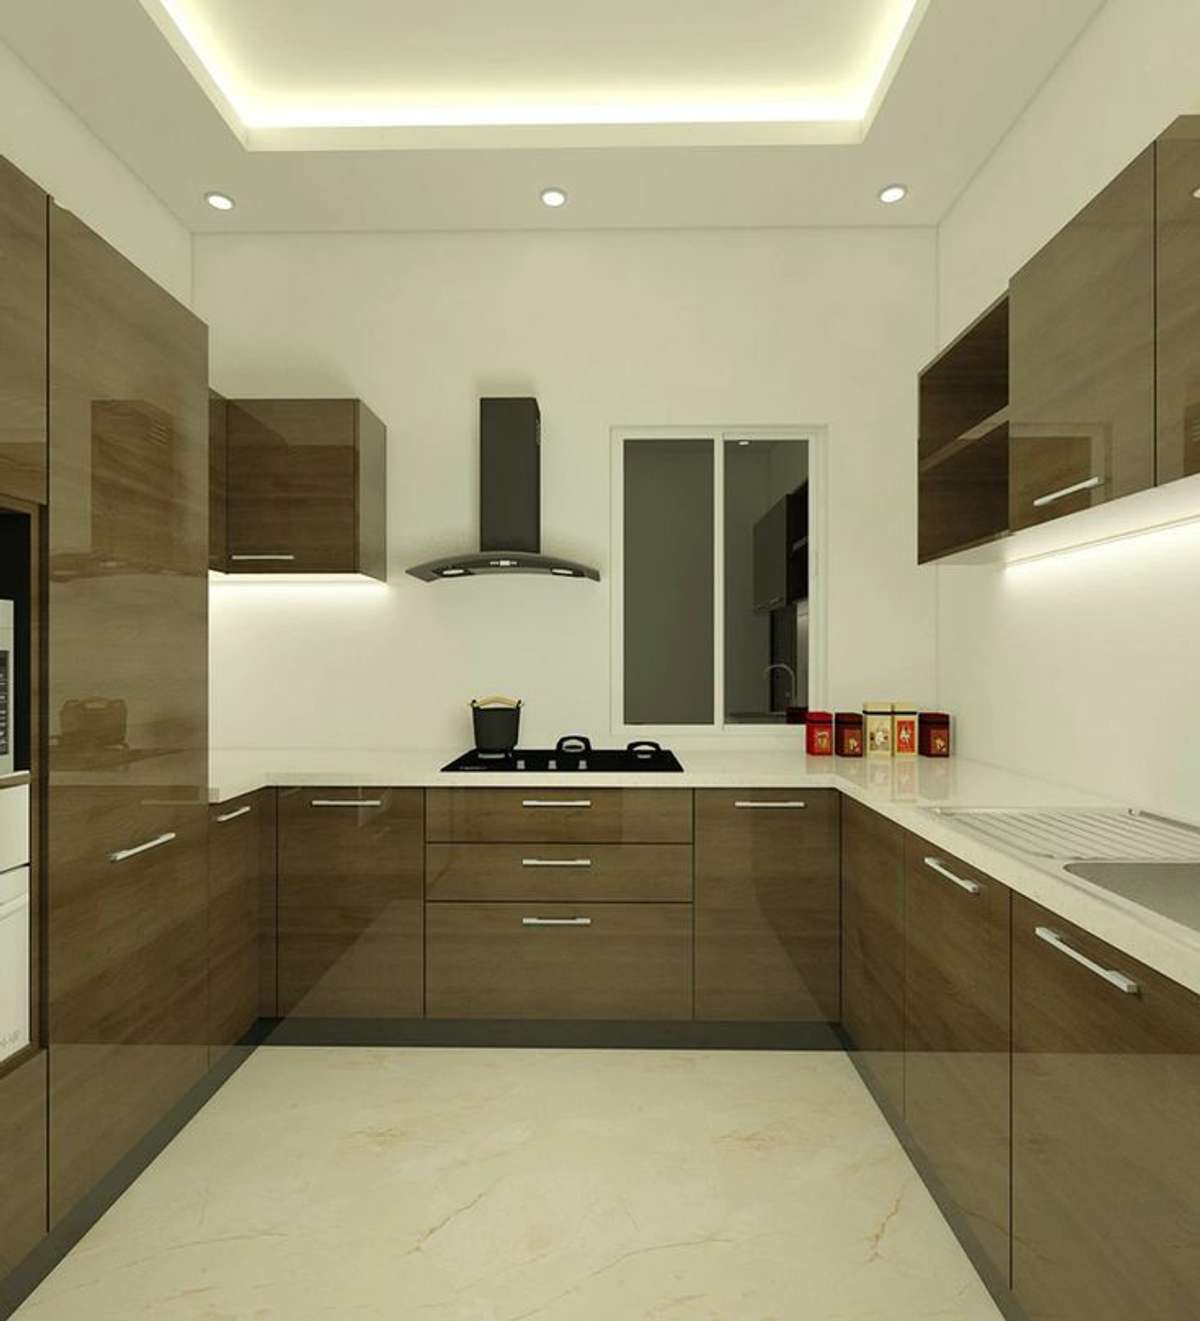 Ceiling, Kitchen, Lighting, Storage Designs by Interior Designer Astha jain, Jaipur | Kolo